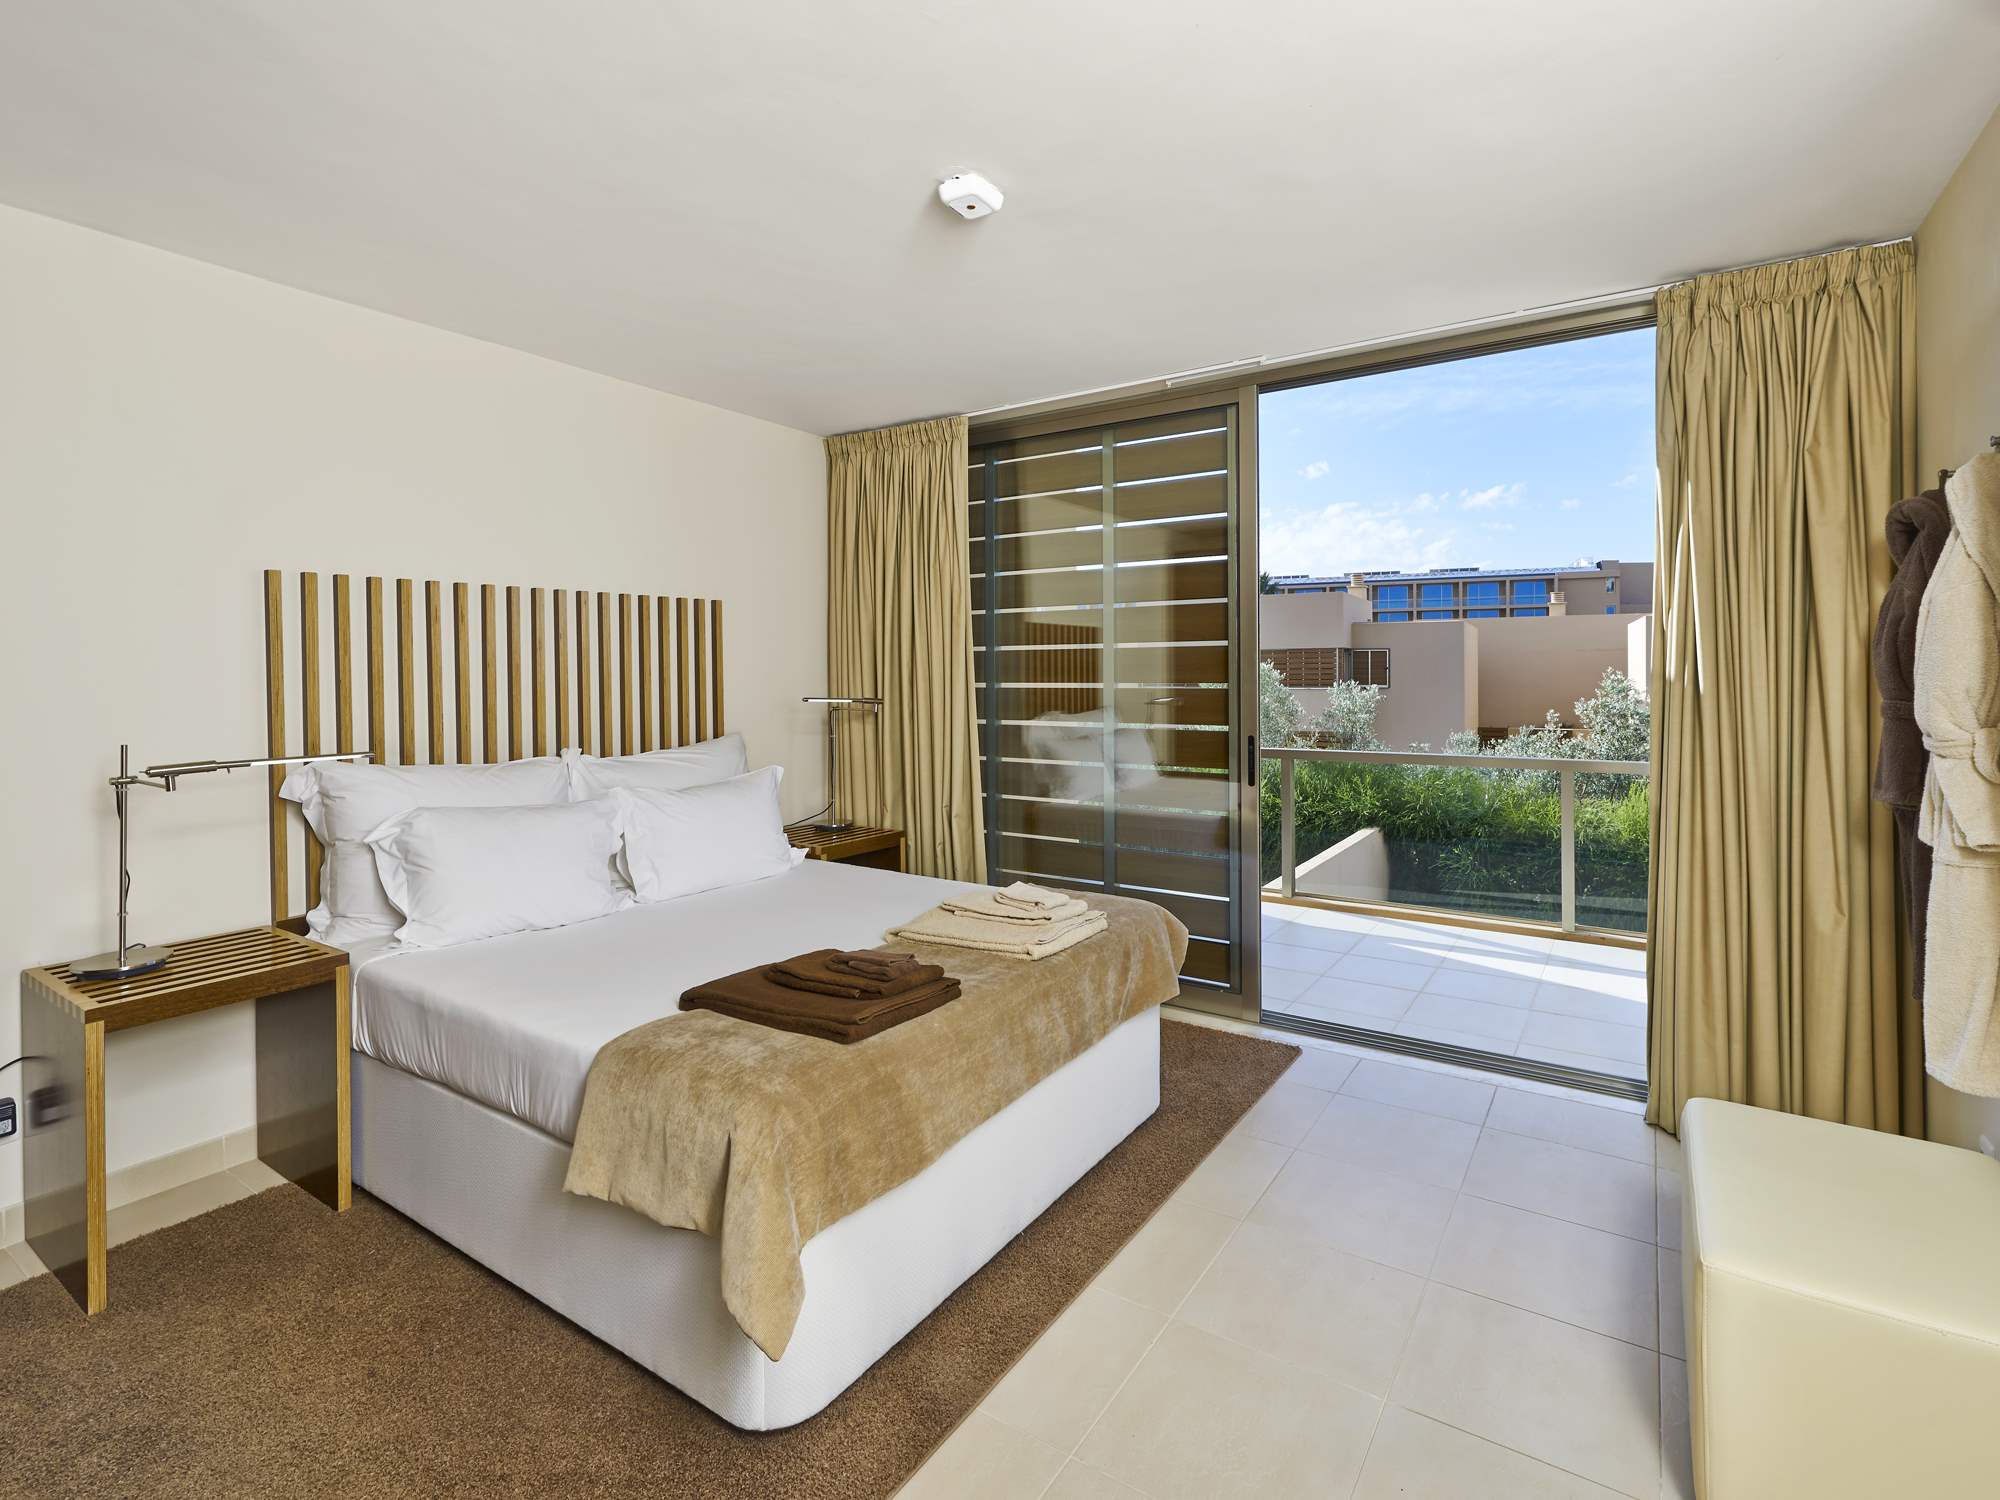 Salgados Beach Villas, 3 Bed, SC Basis, 3 bedroom villa in Vidamar Resort, Algarve Photo #8